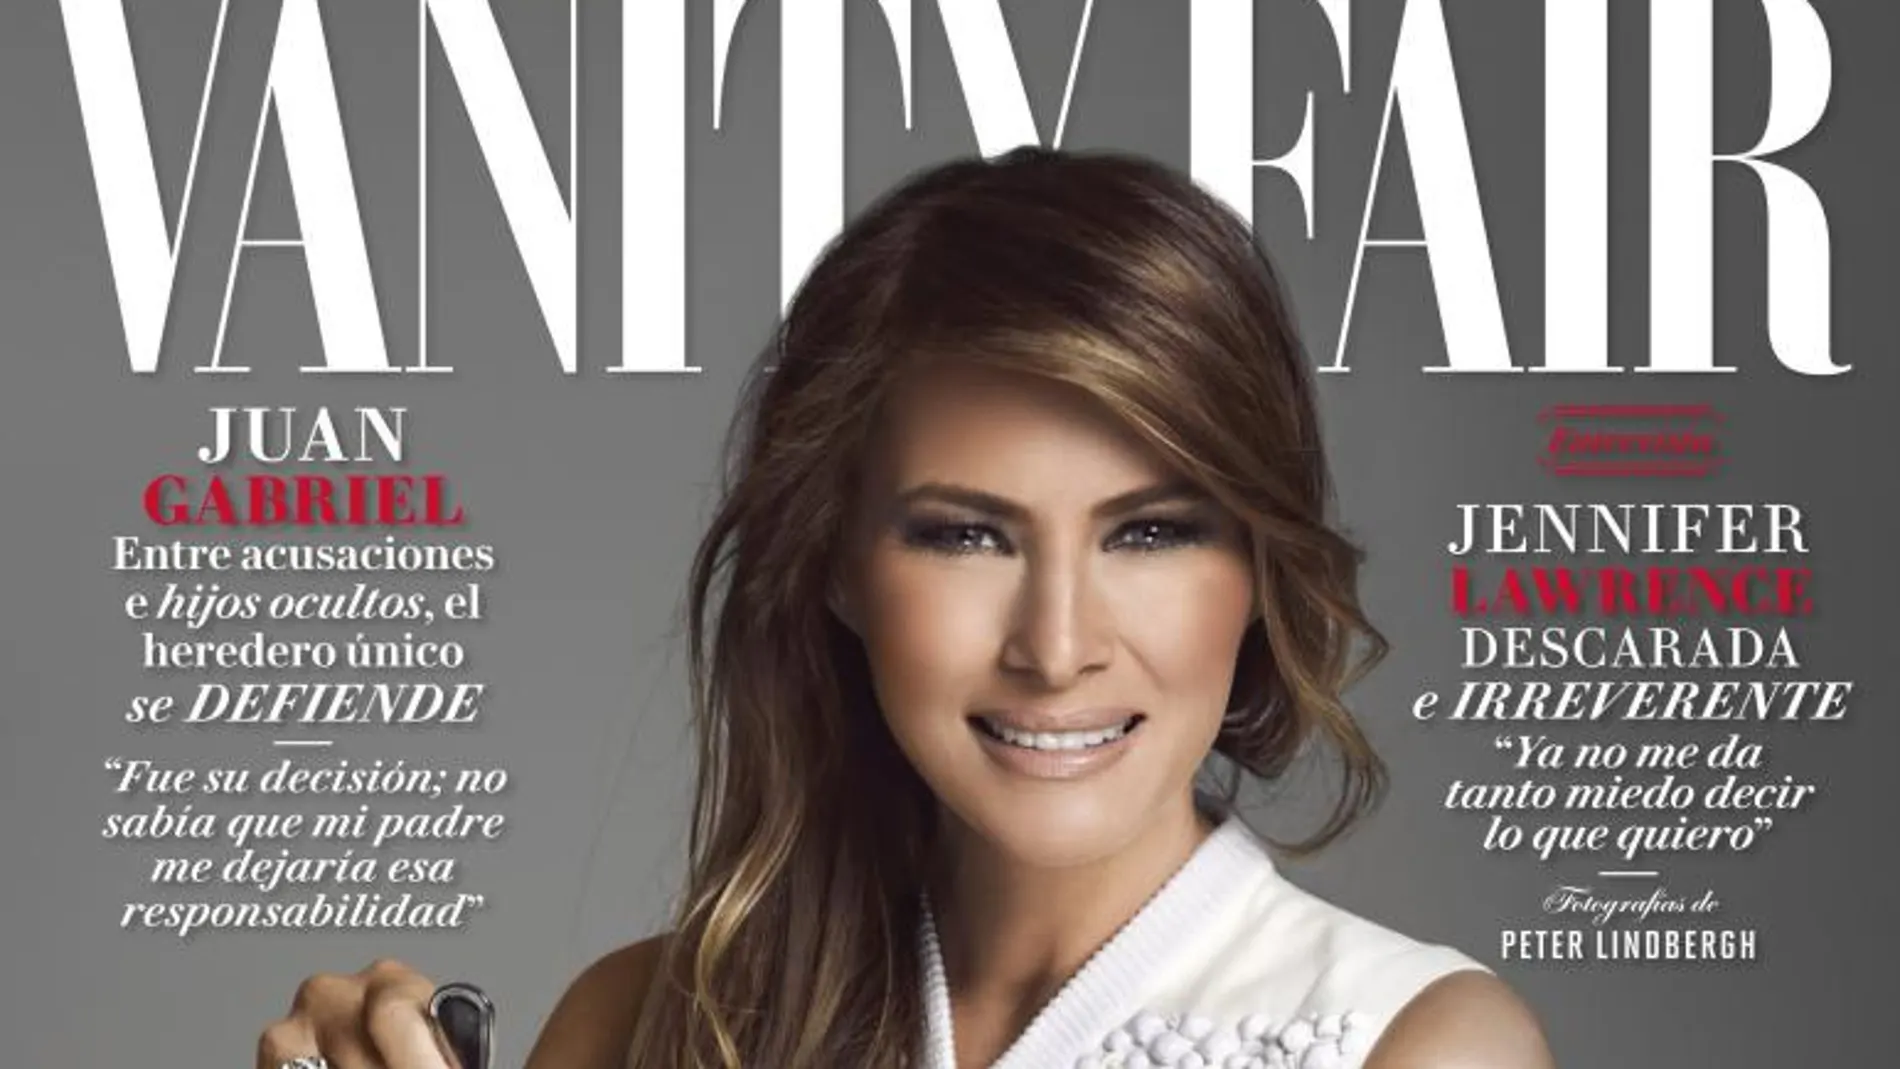 Fotografía cedida hoy, jueves 26 de enero de 2017, por la revista Vanity Fair México que muestra la portada de la publicación con la primera dama de Estados Unidos, Melania Trump, en el más reciente número de la edición mexicana